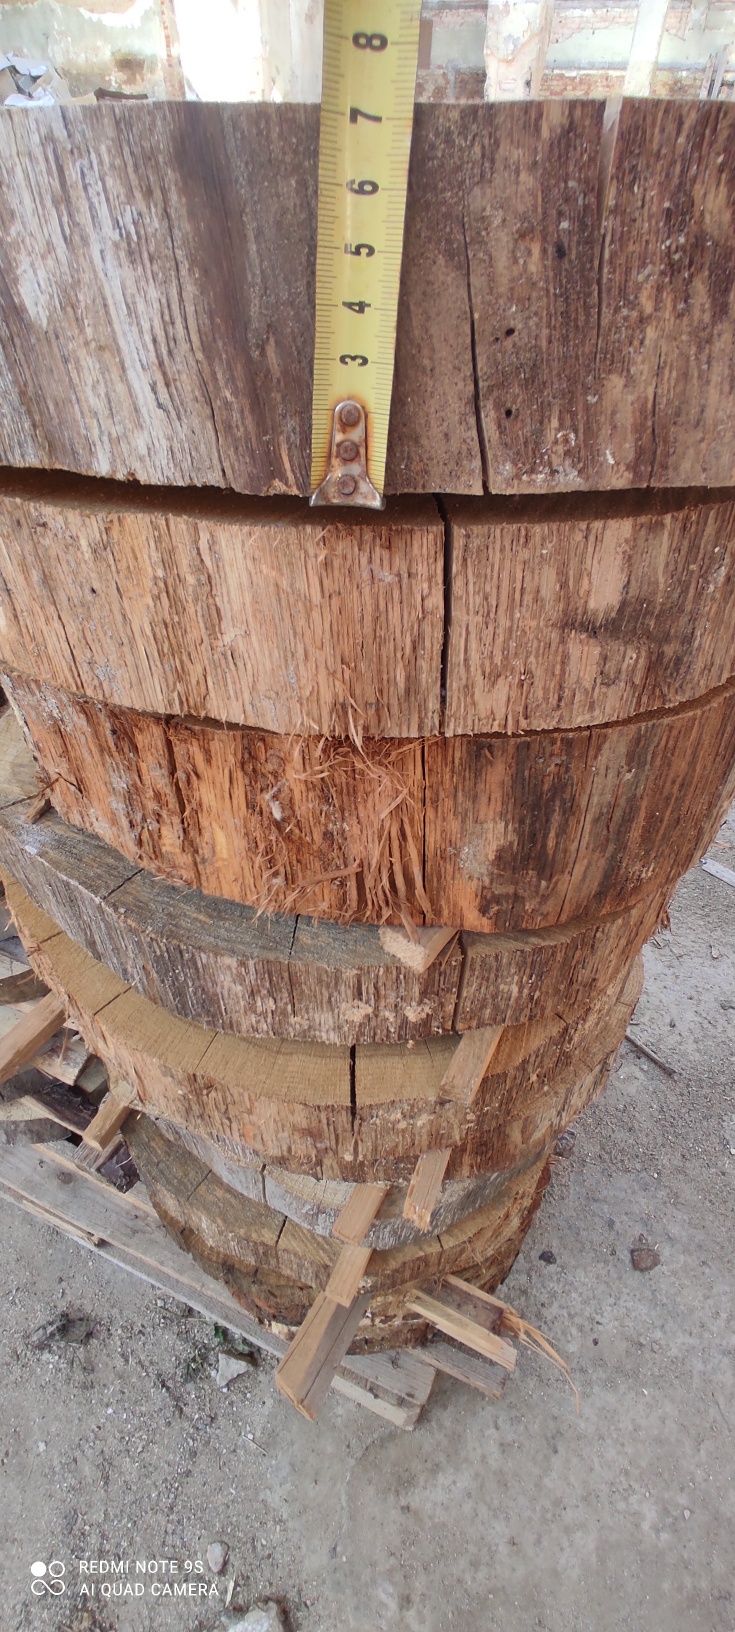 Plaster drewna DĄB cięte na traku 45-50cm sezonowane